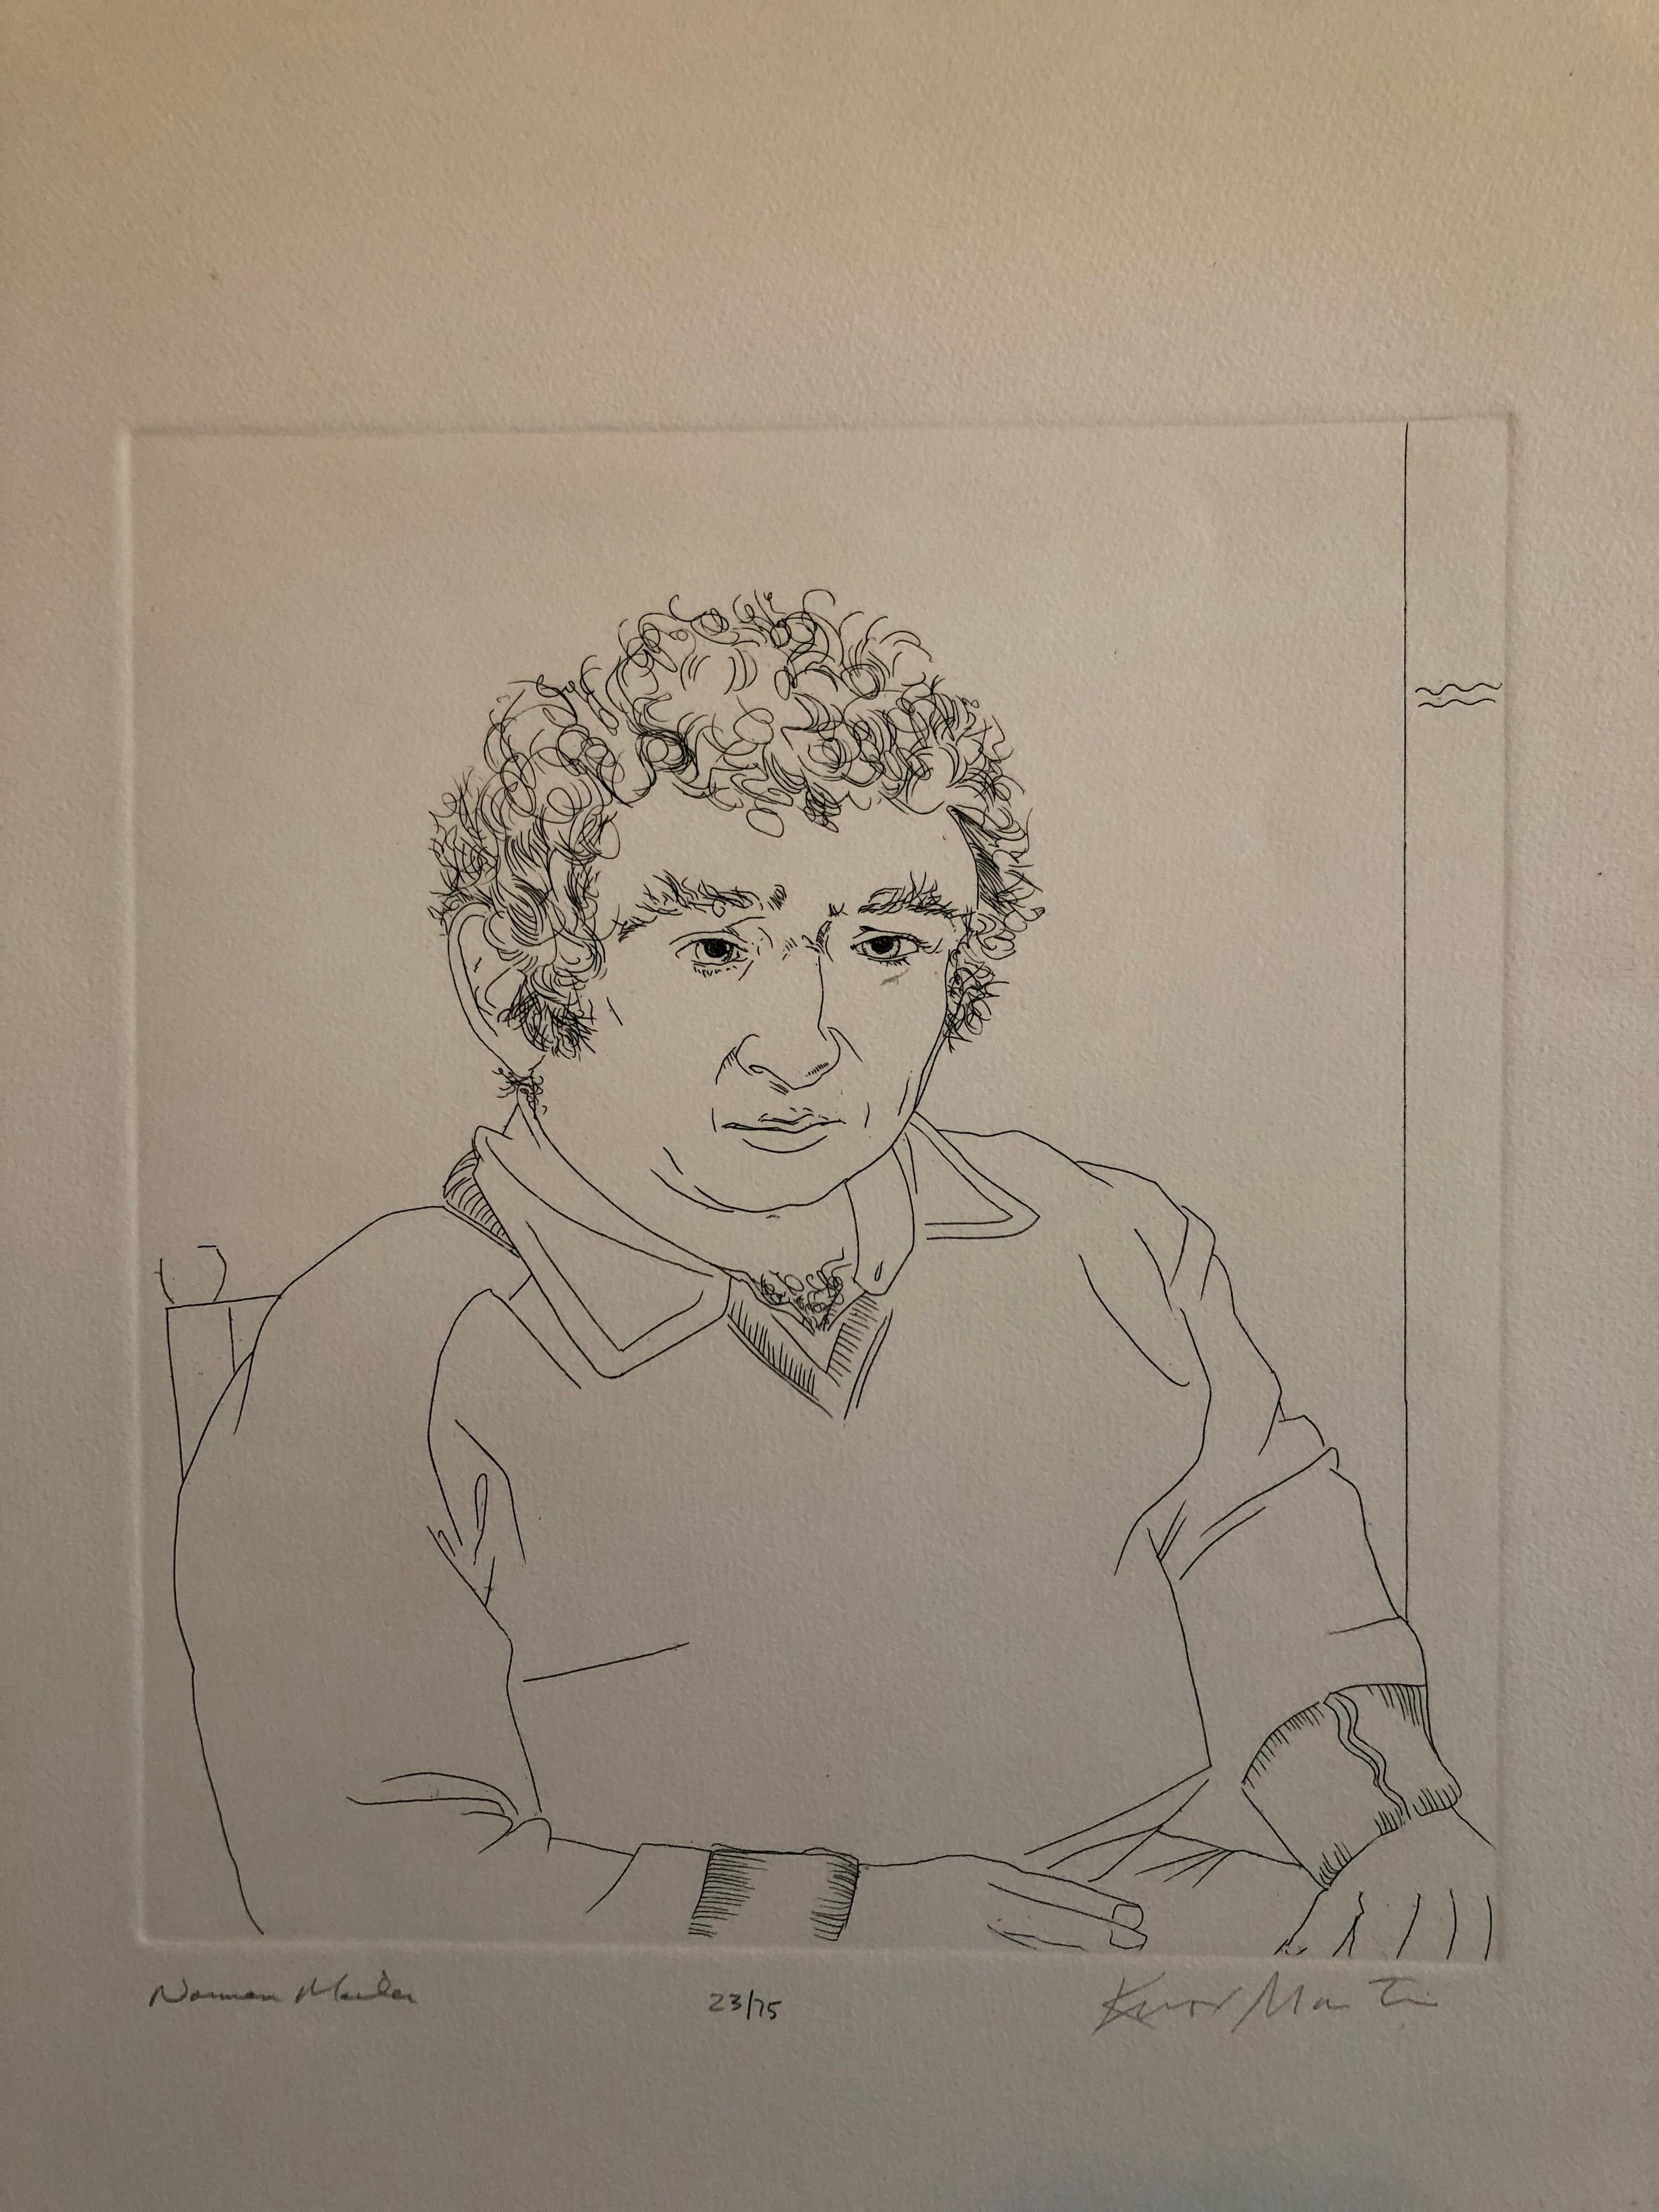 Portrait de Norman Mailer, lauréat du prix Pulitzer, gravure au trait - Modernisme américain Print par Knox Martin